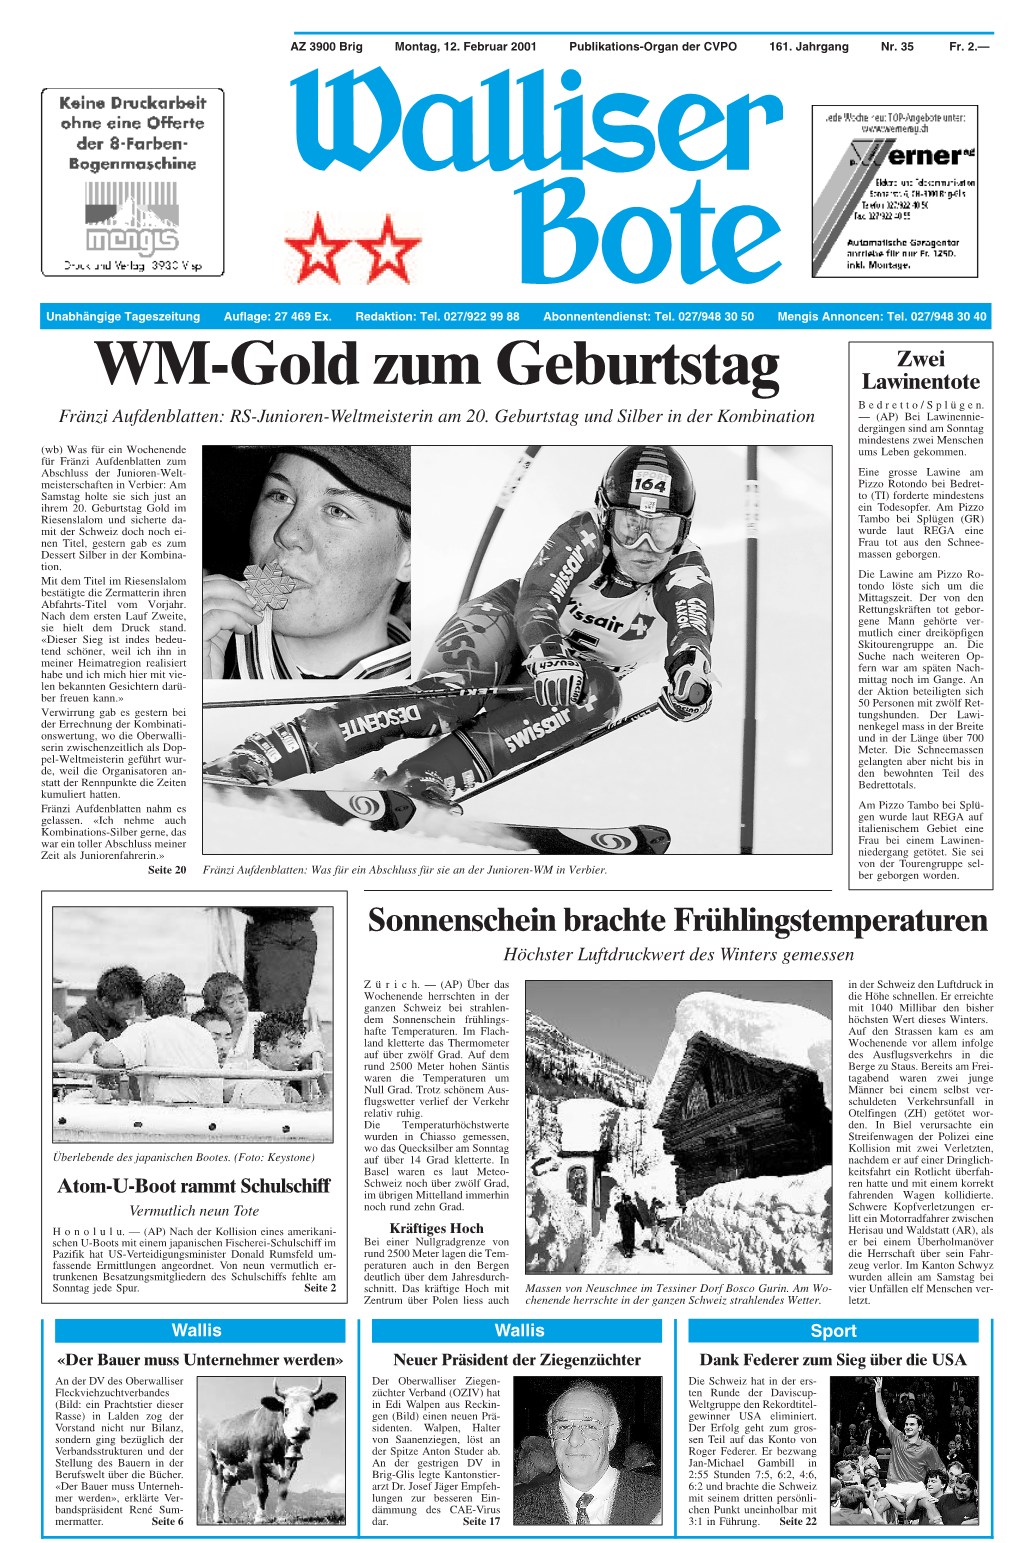 WM-Gold Zum Geburtstag Lawinentote Bedretto/Splügen